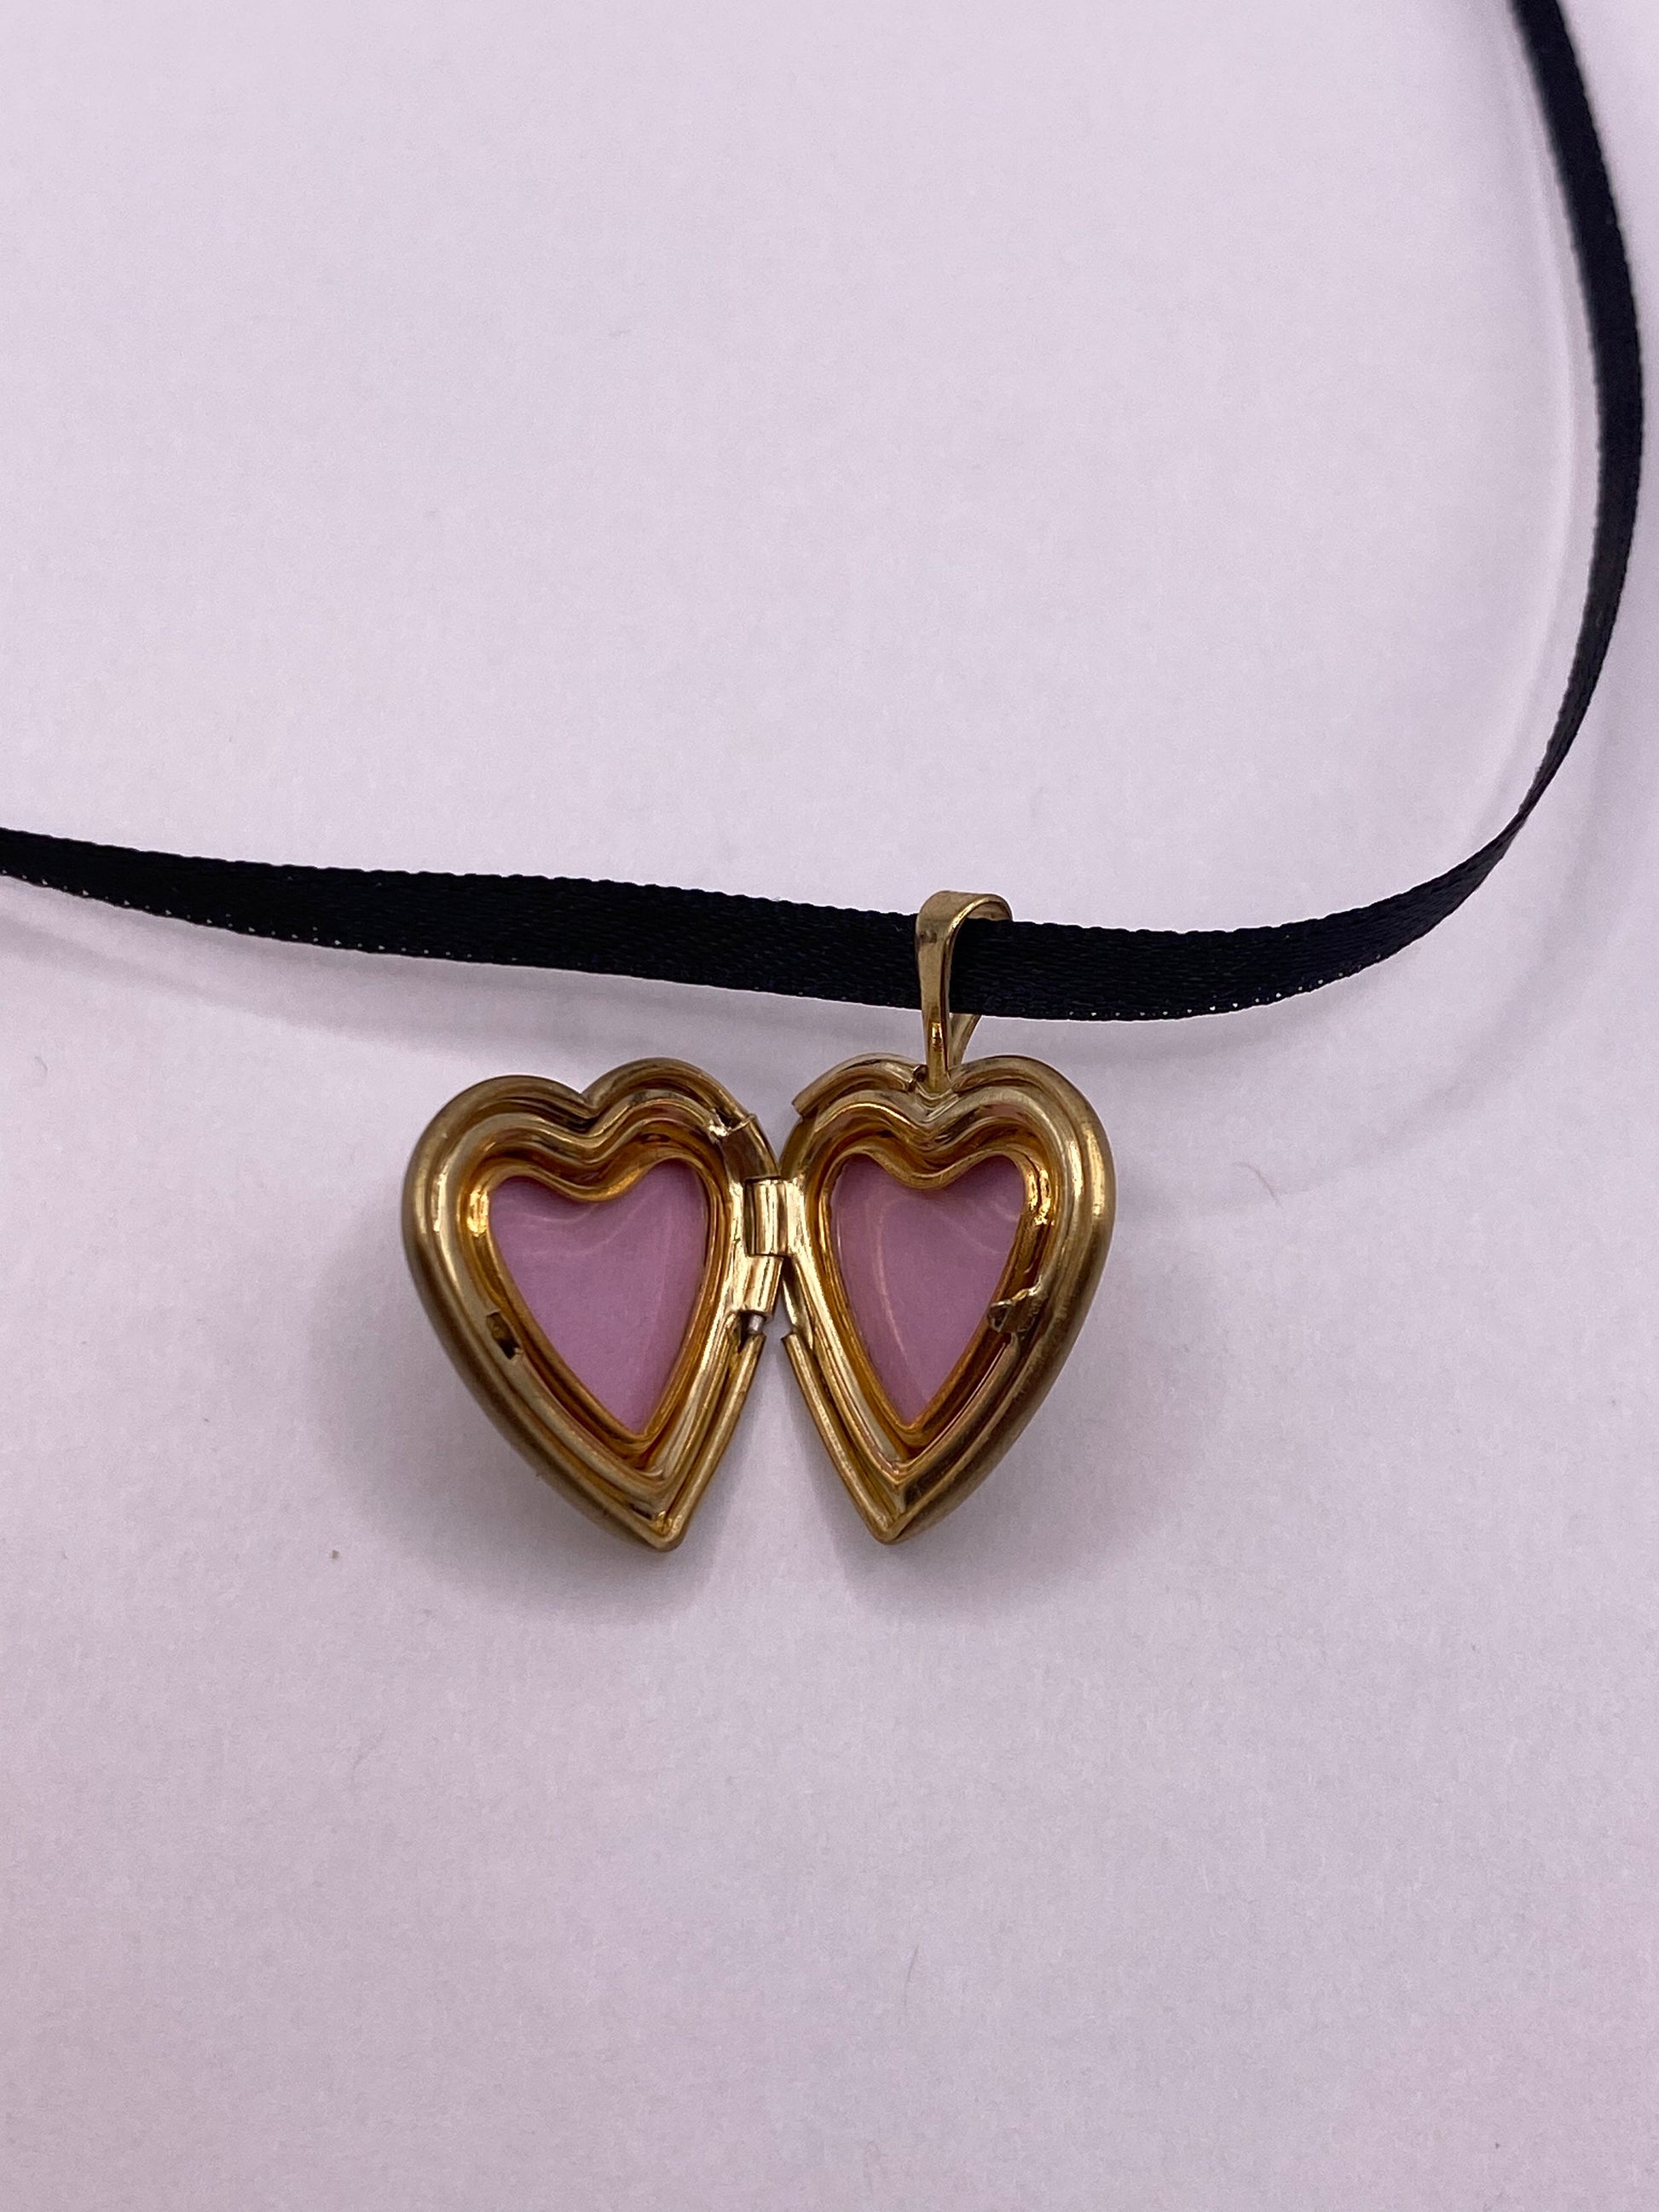 Vintage Heart Mother Child Locket Choker Gold Filled Necklace